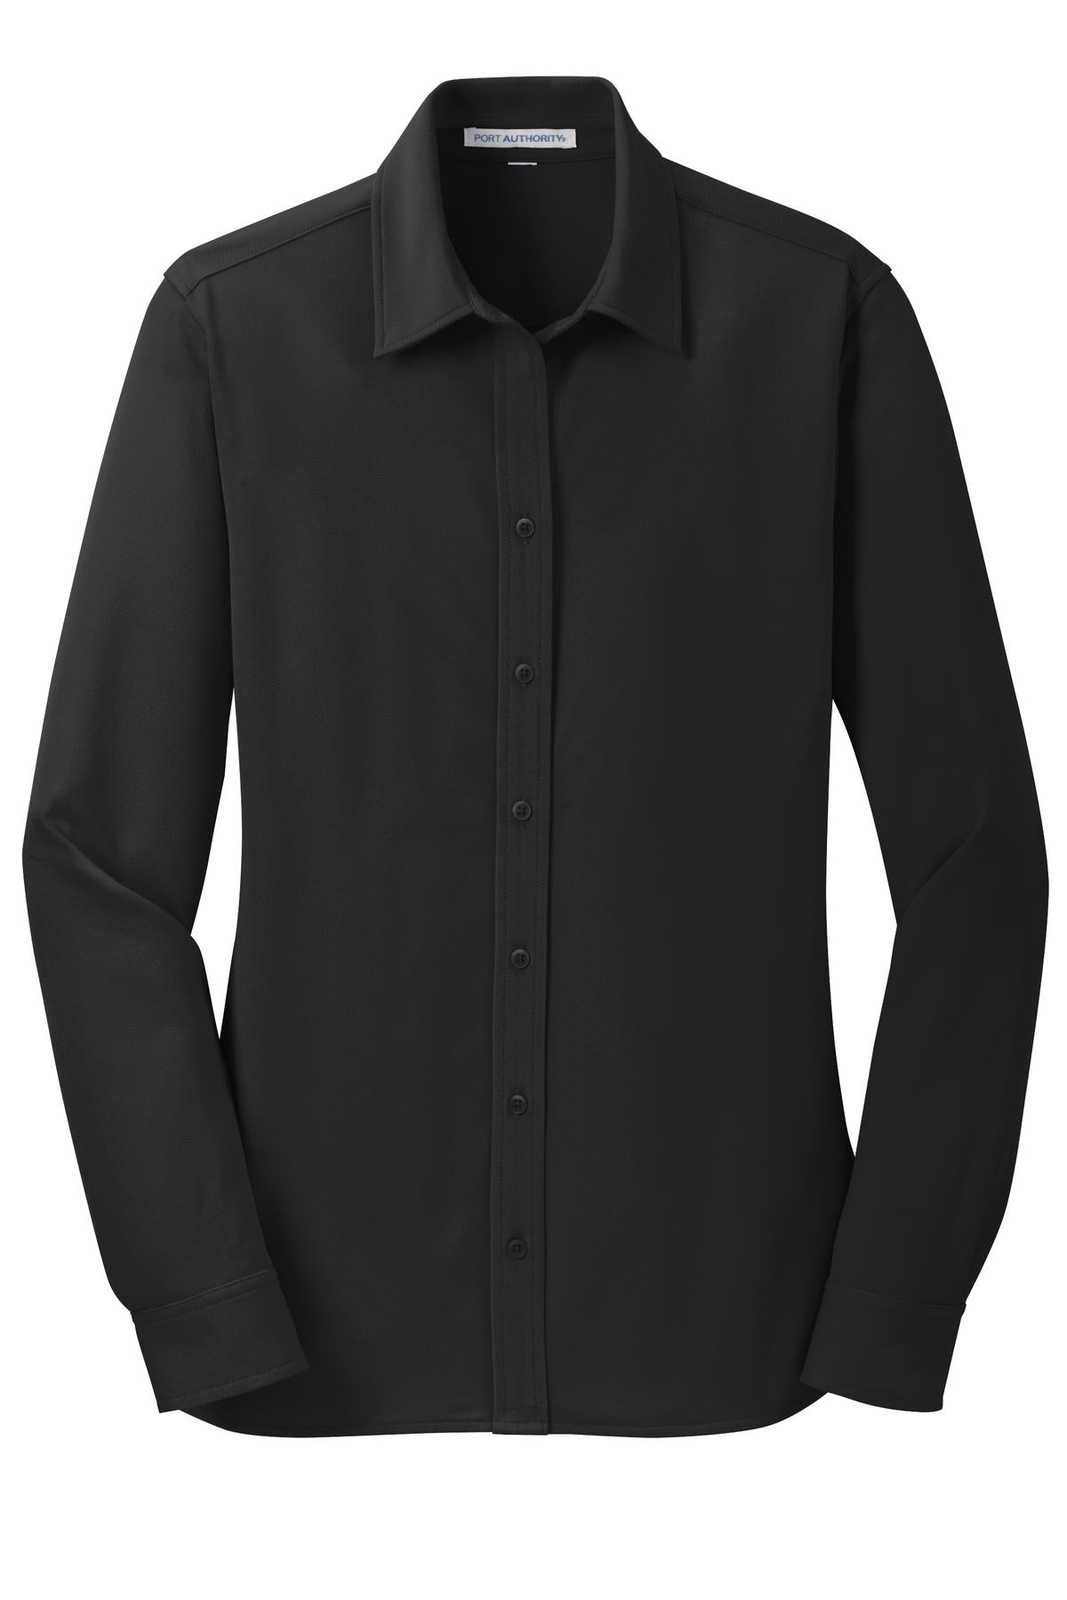 Port Authority L570 Ladies Dimension Knit Dress Shirt - Black - HIT a Double - 5